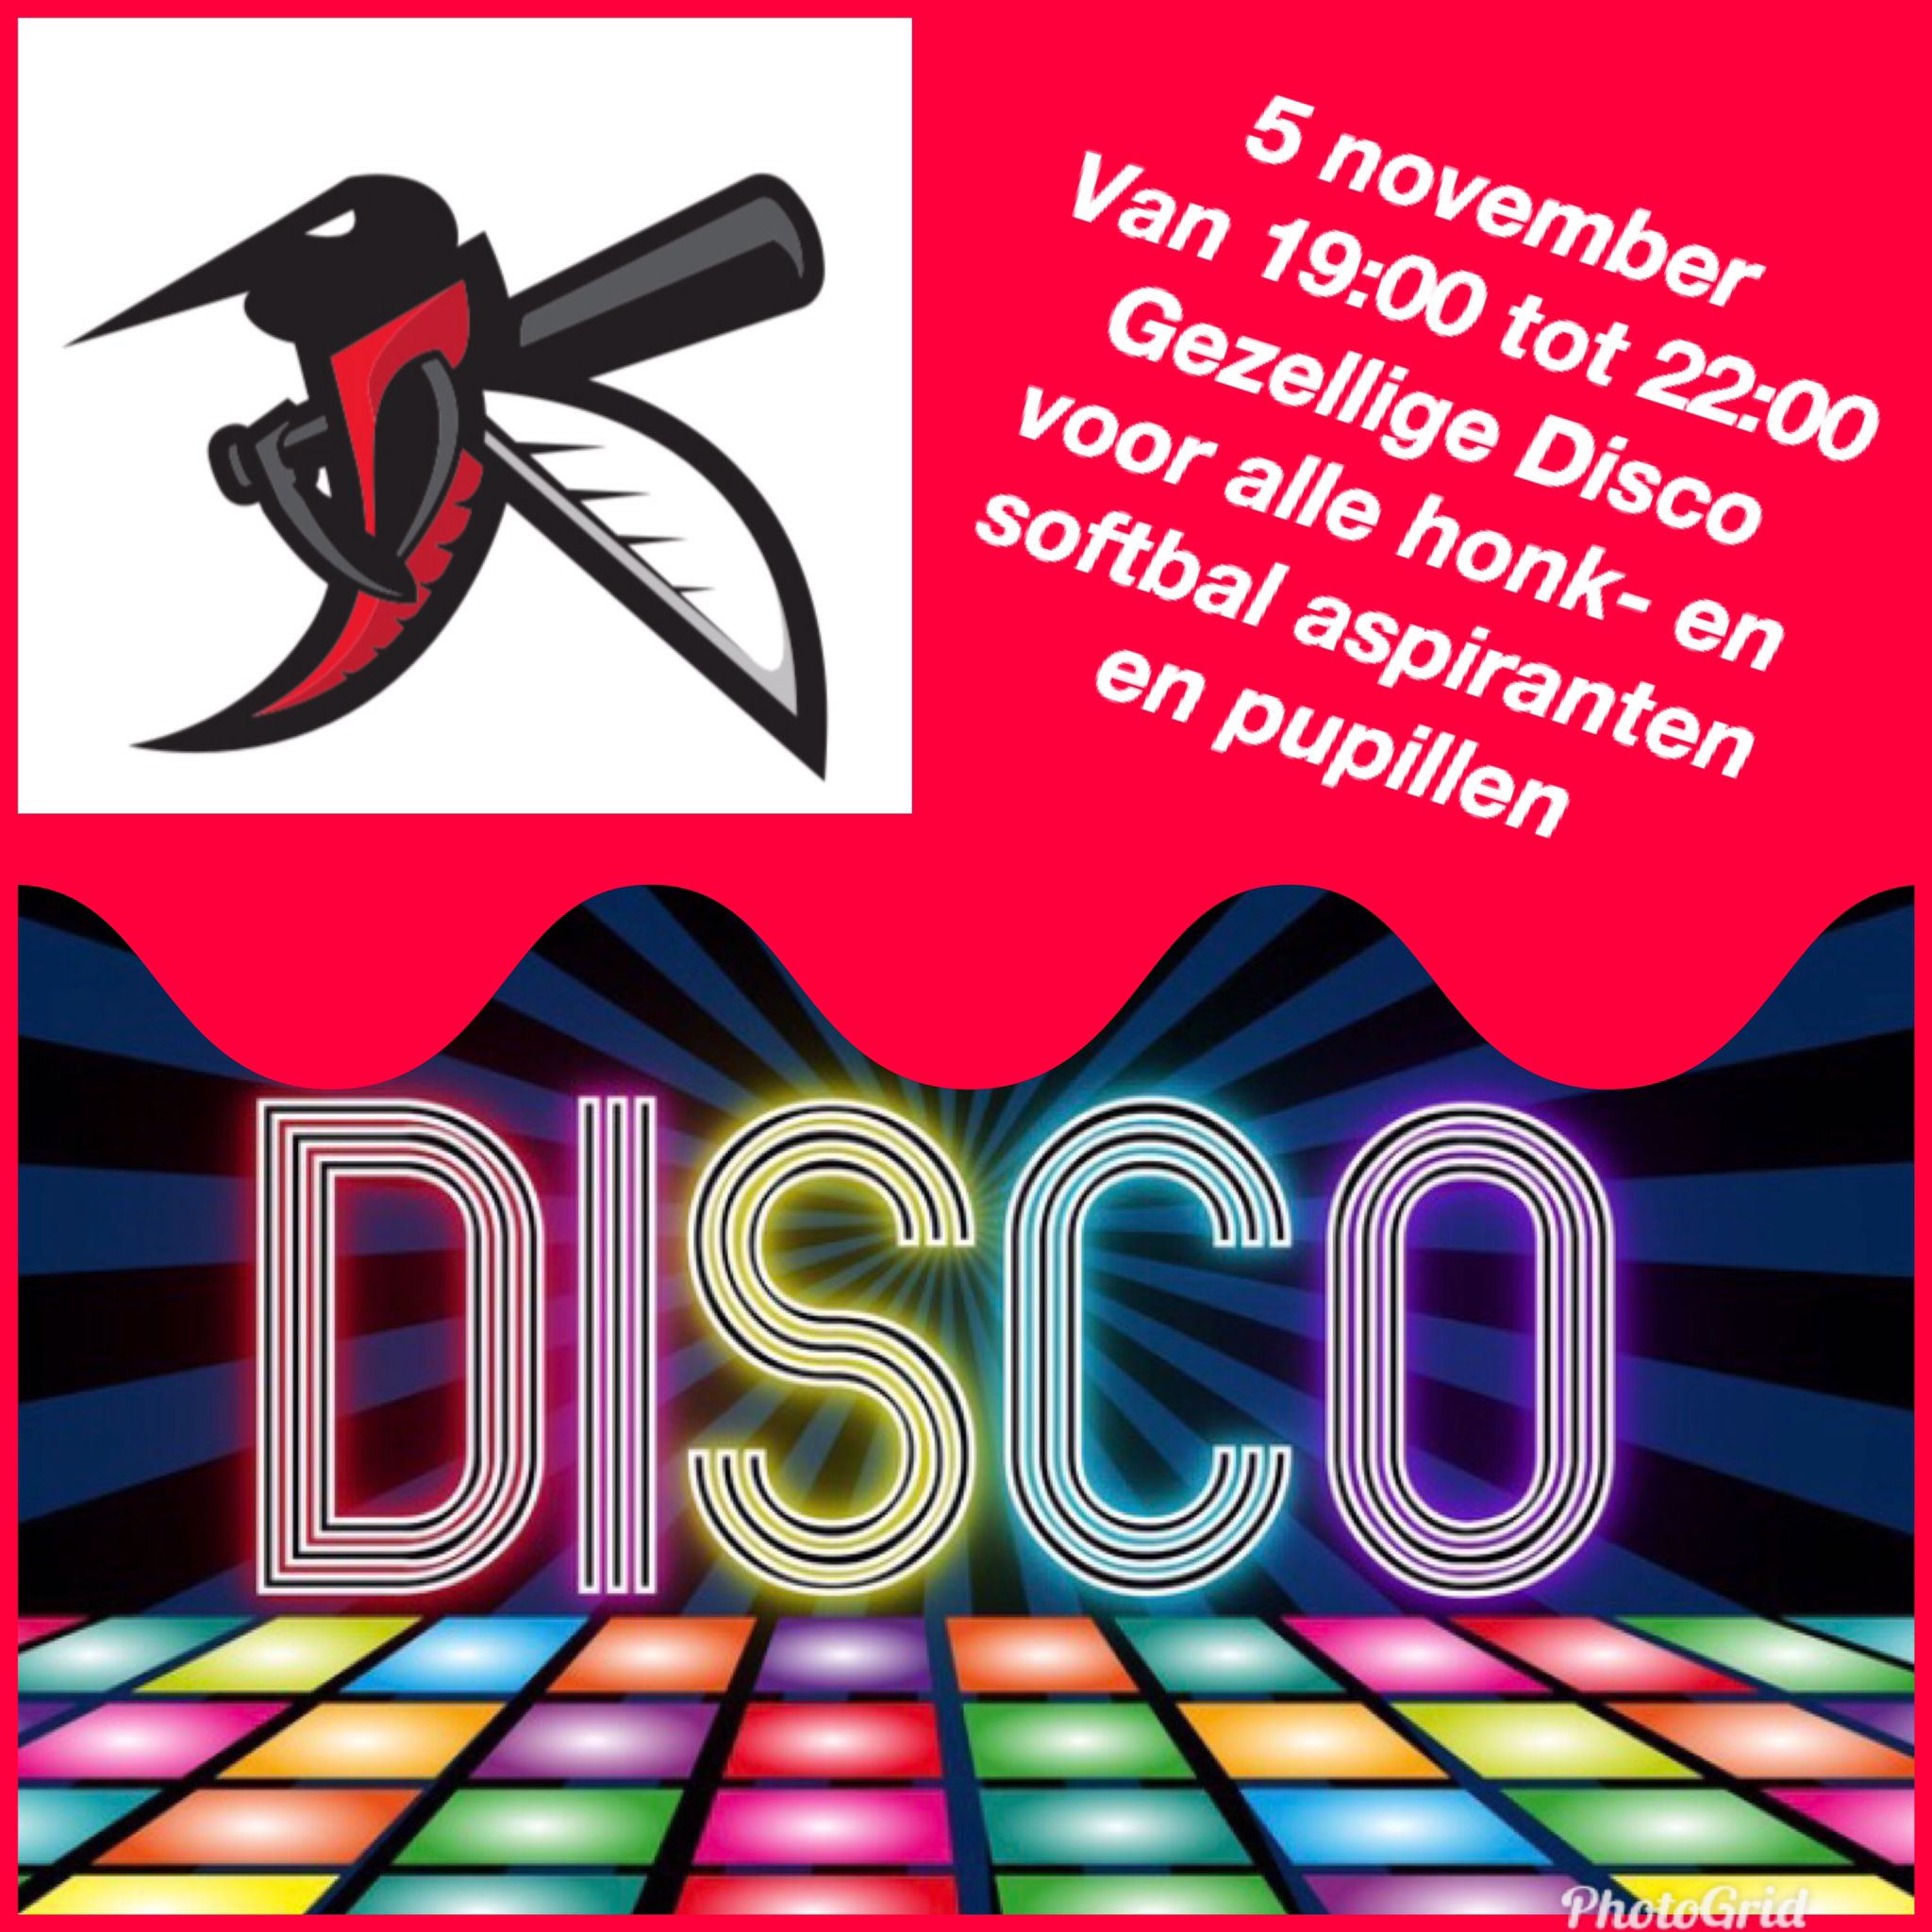 Disco voor pupillen en aspiranten op 5 november